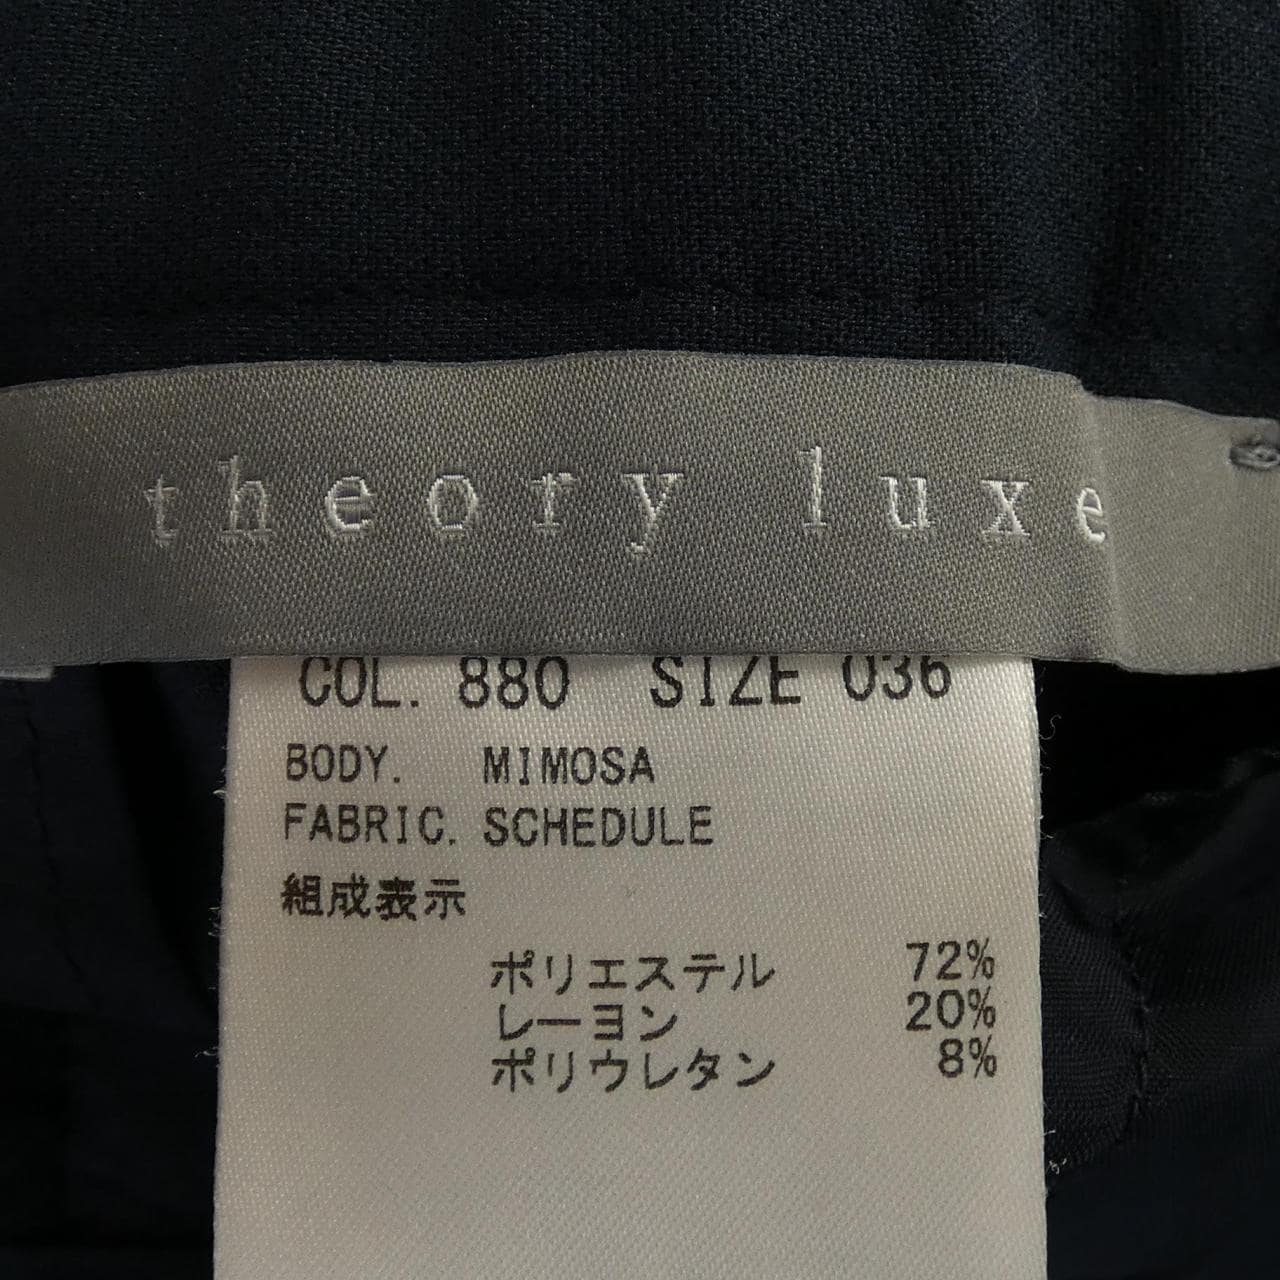 セオリーリュクス Theory luxe パンツ